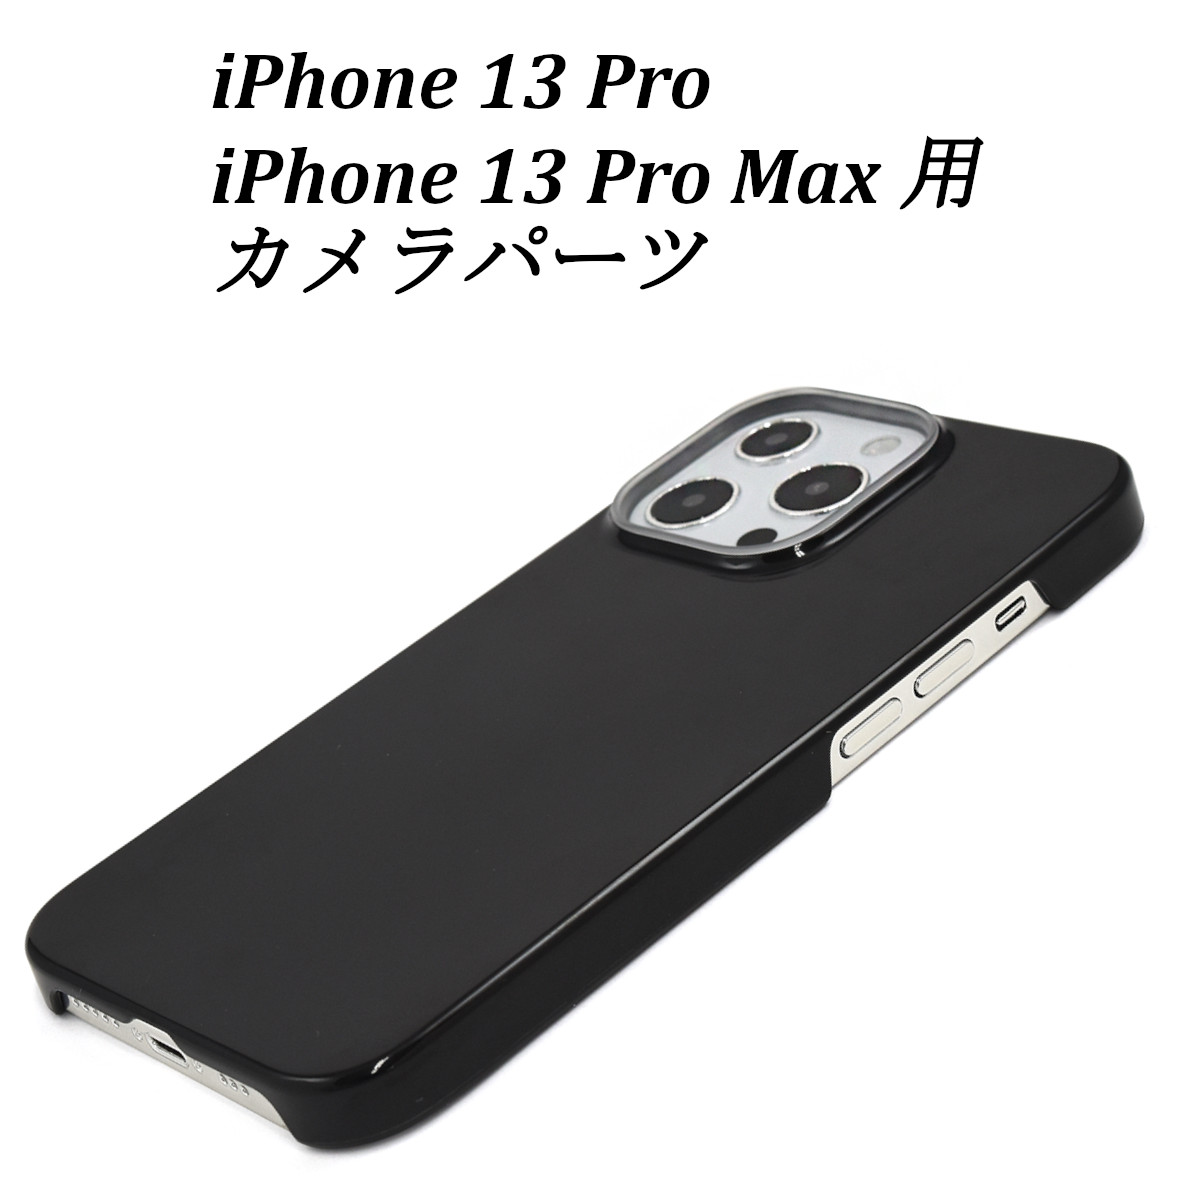 iPhone 13 Pro/iPhone 13 ProMax ハードケース&ソフトケース用 カメラパーツ ハンドメイド パーツ